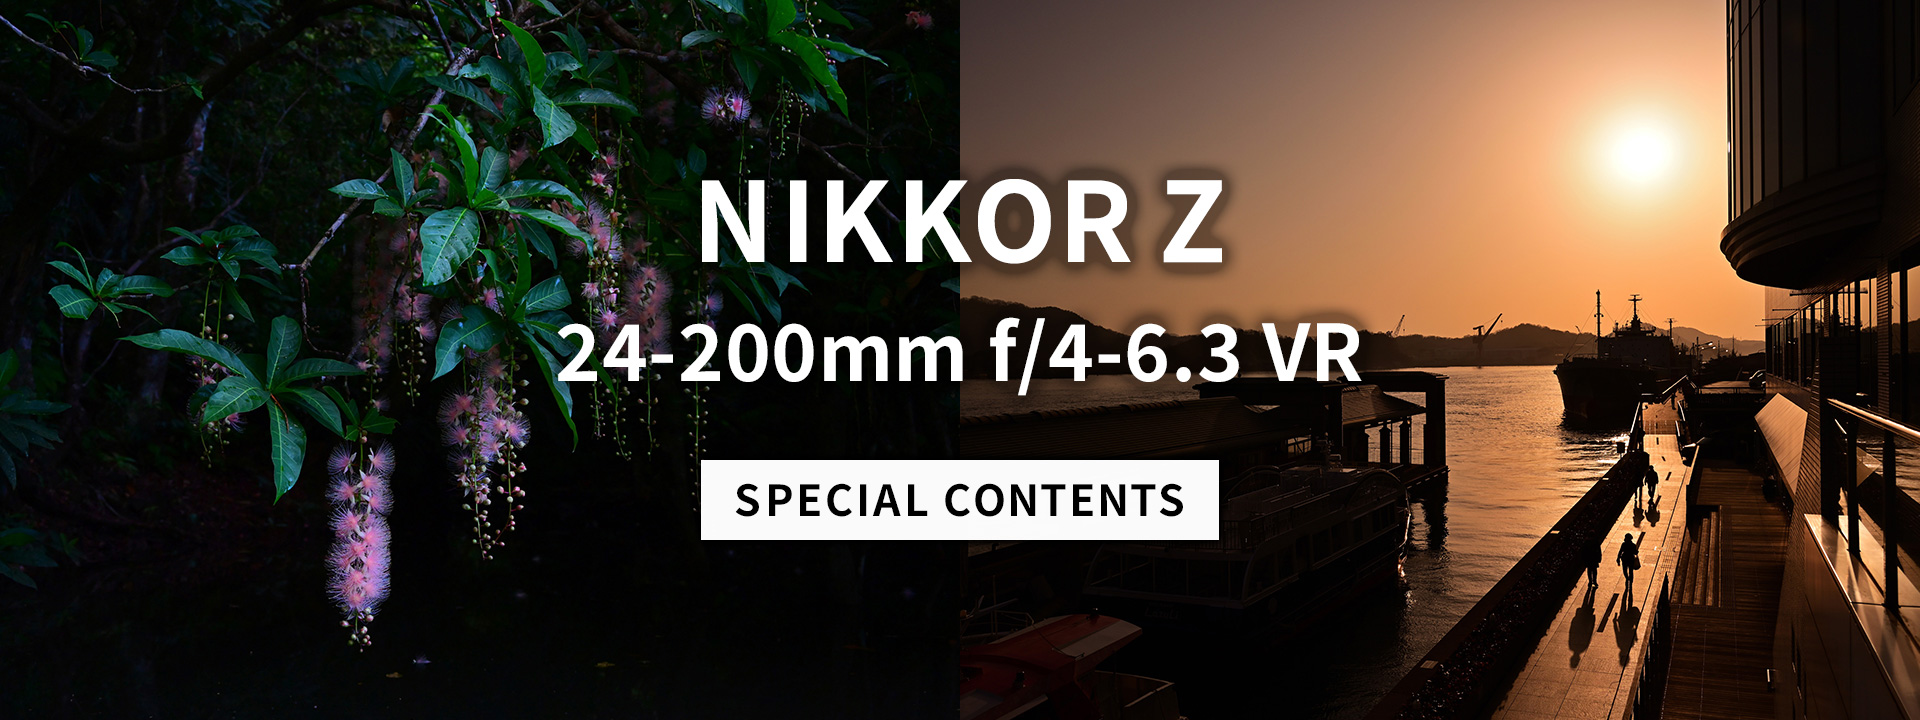 NIKKOR Z 24-200mm f/4-6.3 VR スペシャルコンテンツ